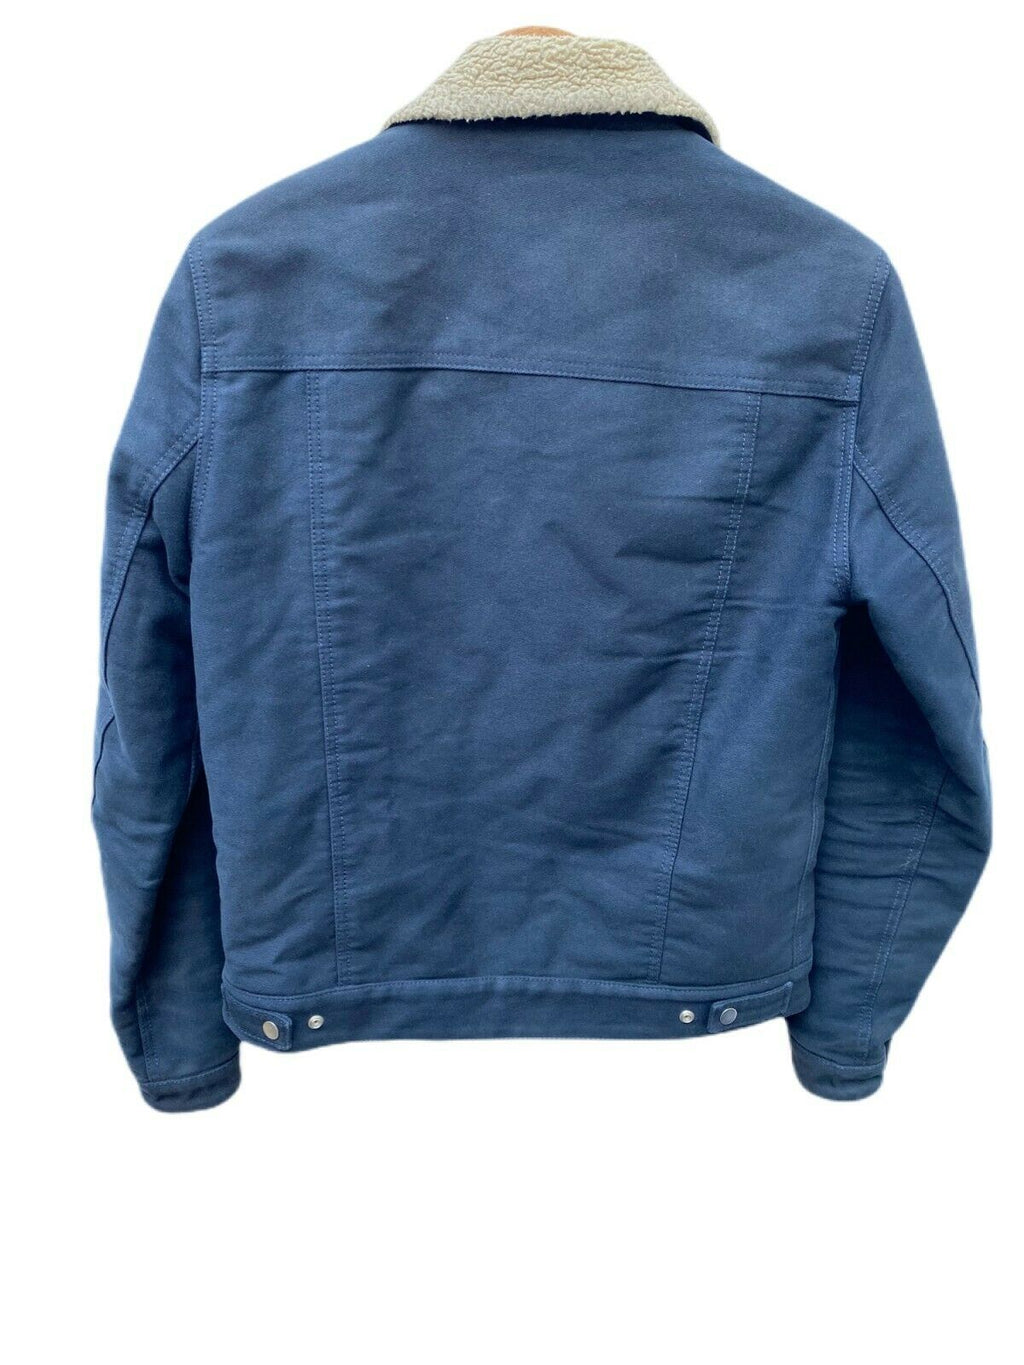 Sandro Navy Shearling Jacket Size XS